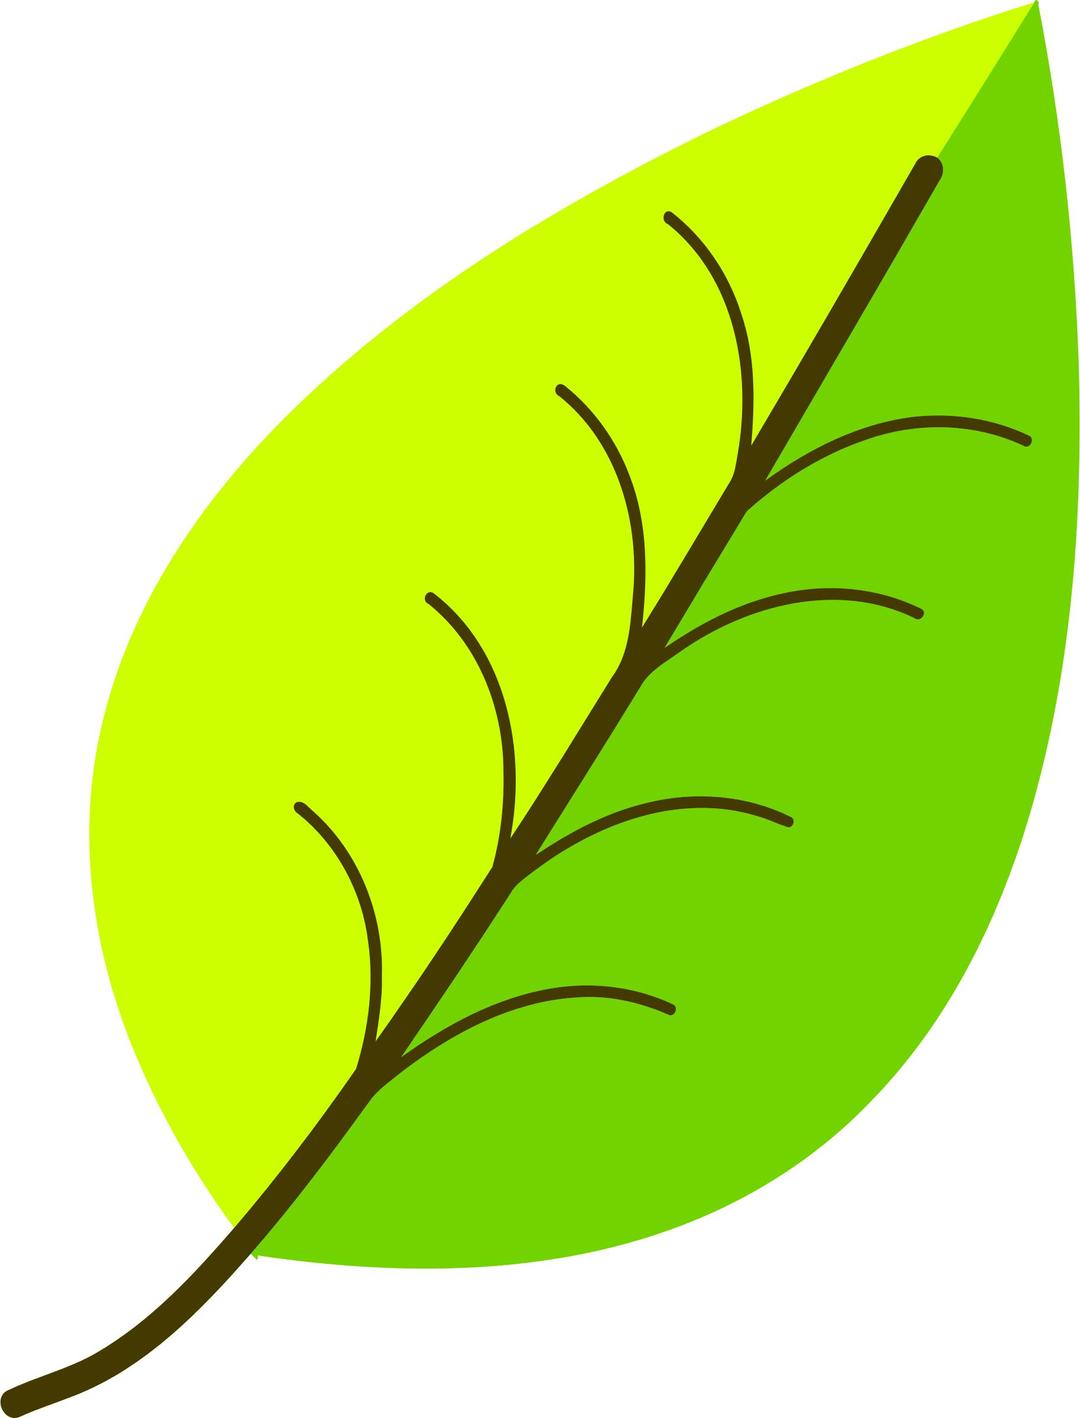 Two colour leaf vectorized png transparent